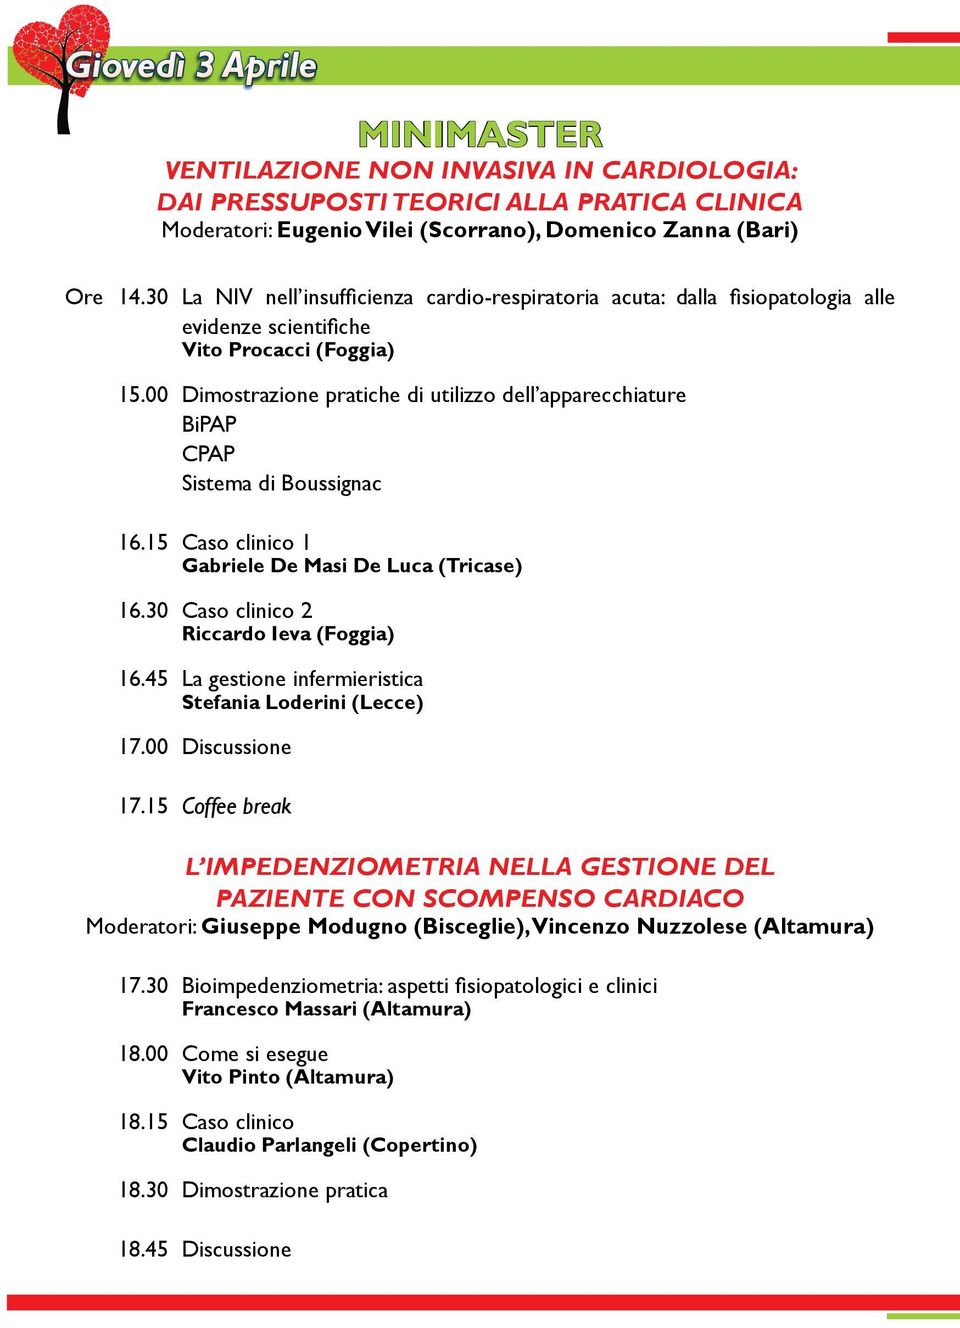 00 Dimostrazione pratiche di utilizzo dell apparecchiature BiPAP CPAP Sistema di Boussignac 16.15 Caso clinico 1 Gabriele De Masi De Luca (Tricase) 16.30 Caso clinico 2 Riccardo Ieva (Foggia) 16.